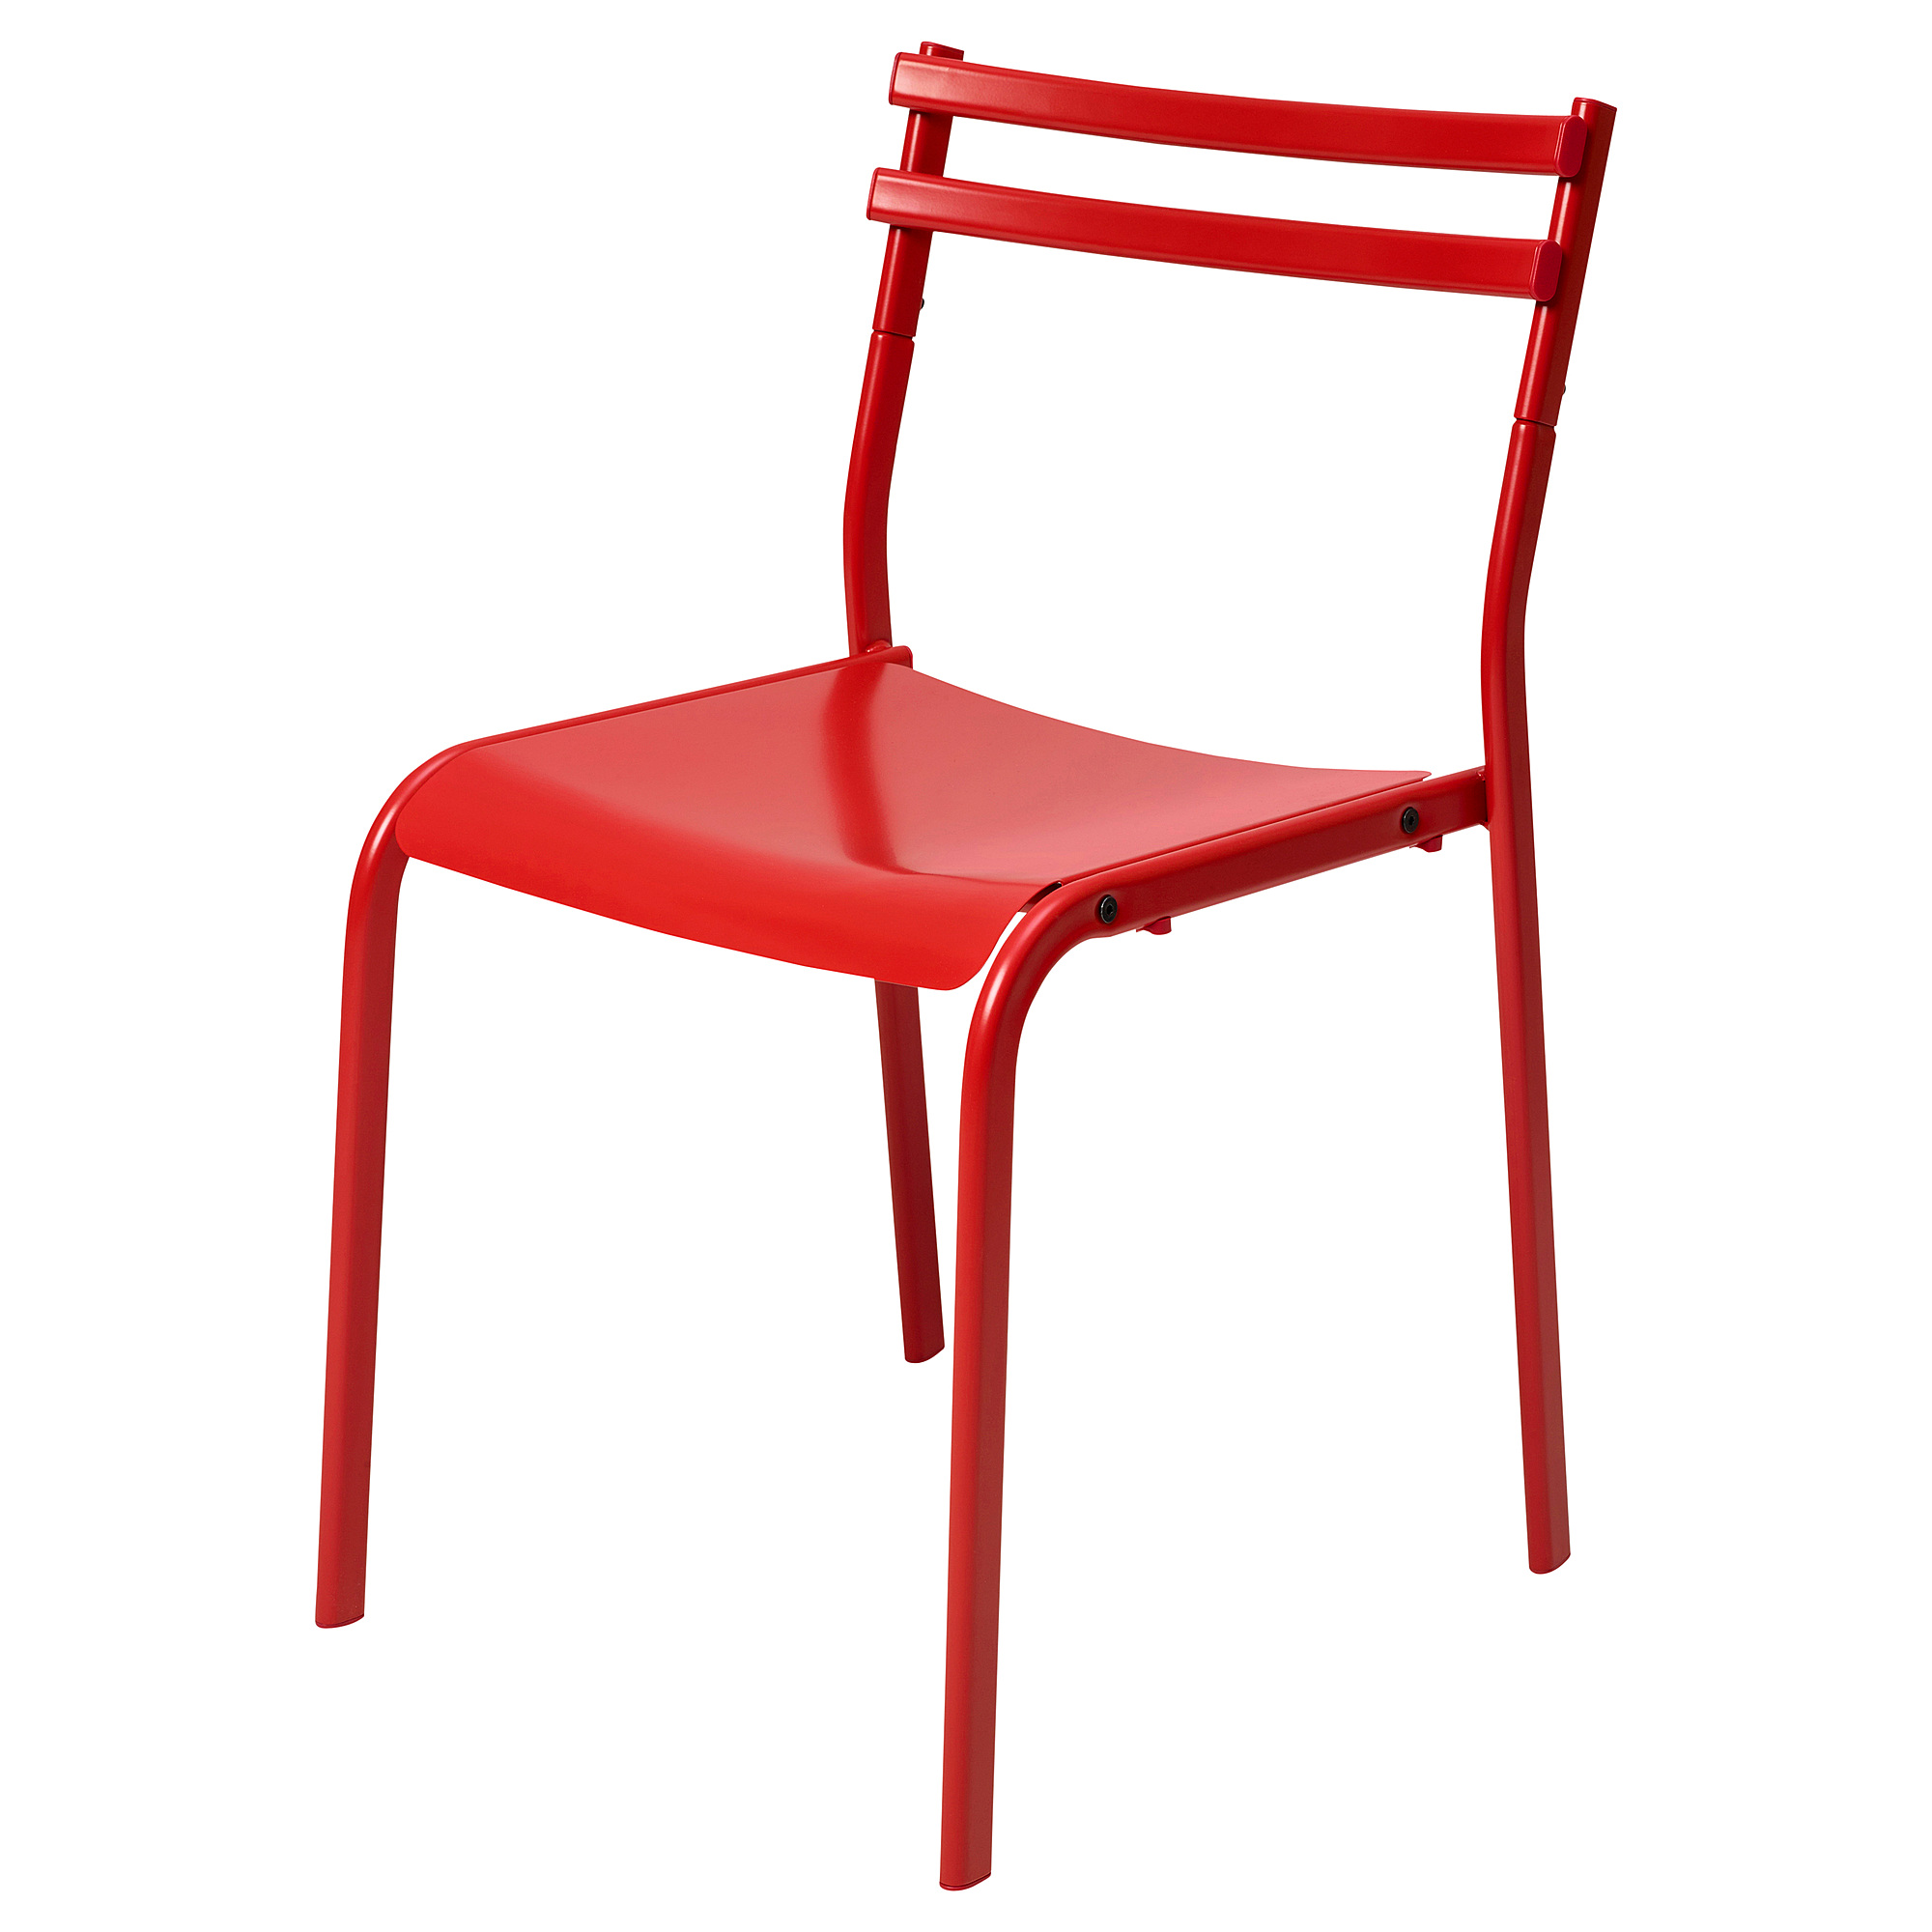 GENESÖN chair